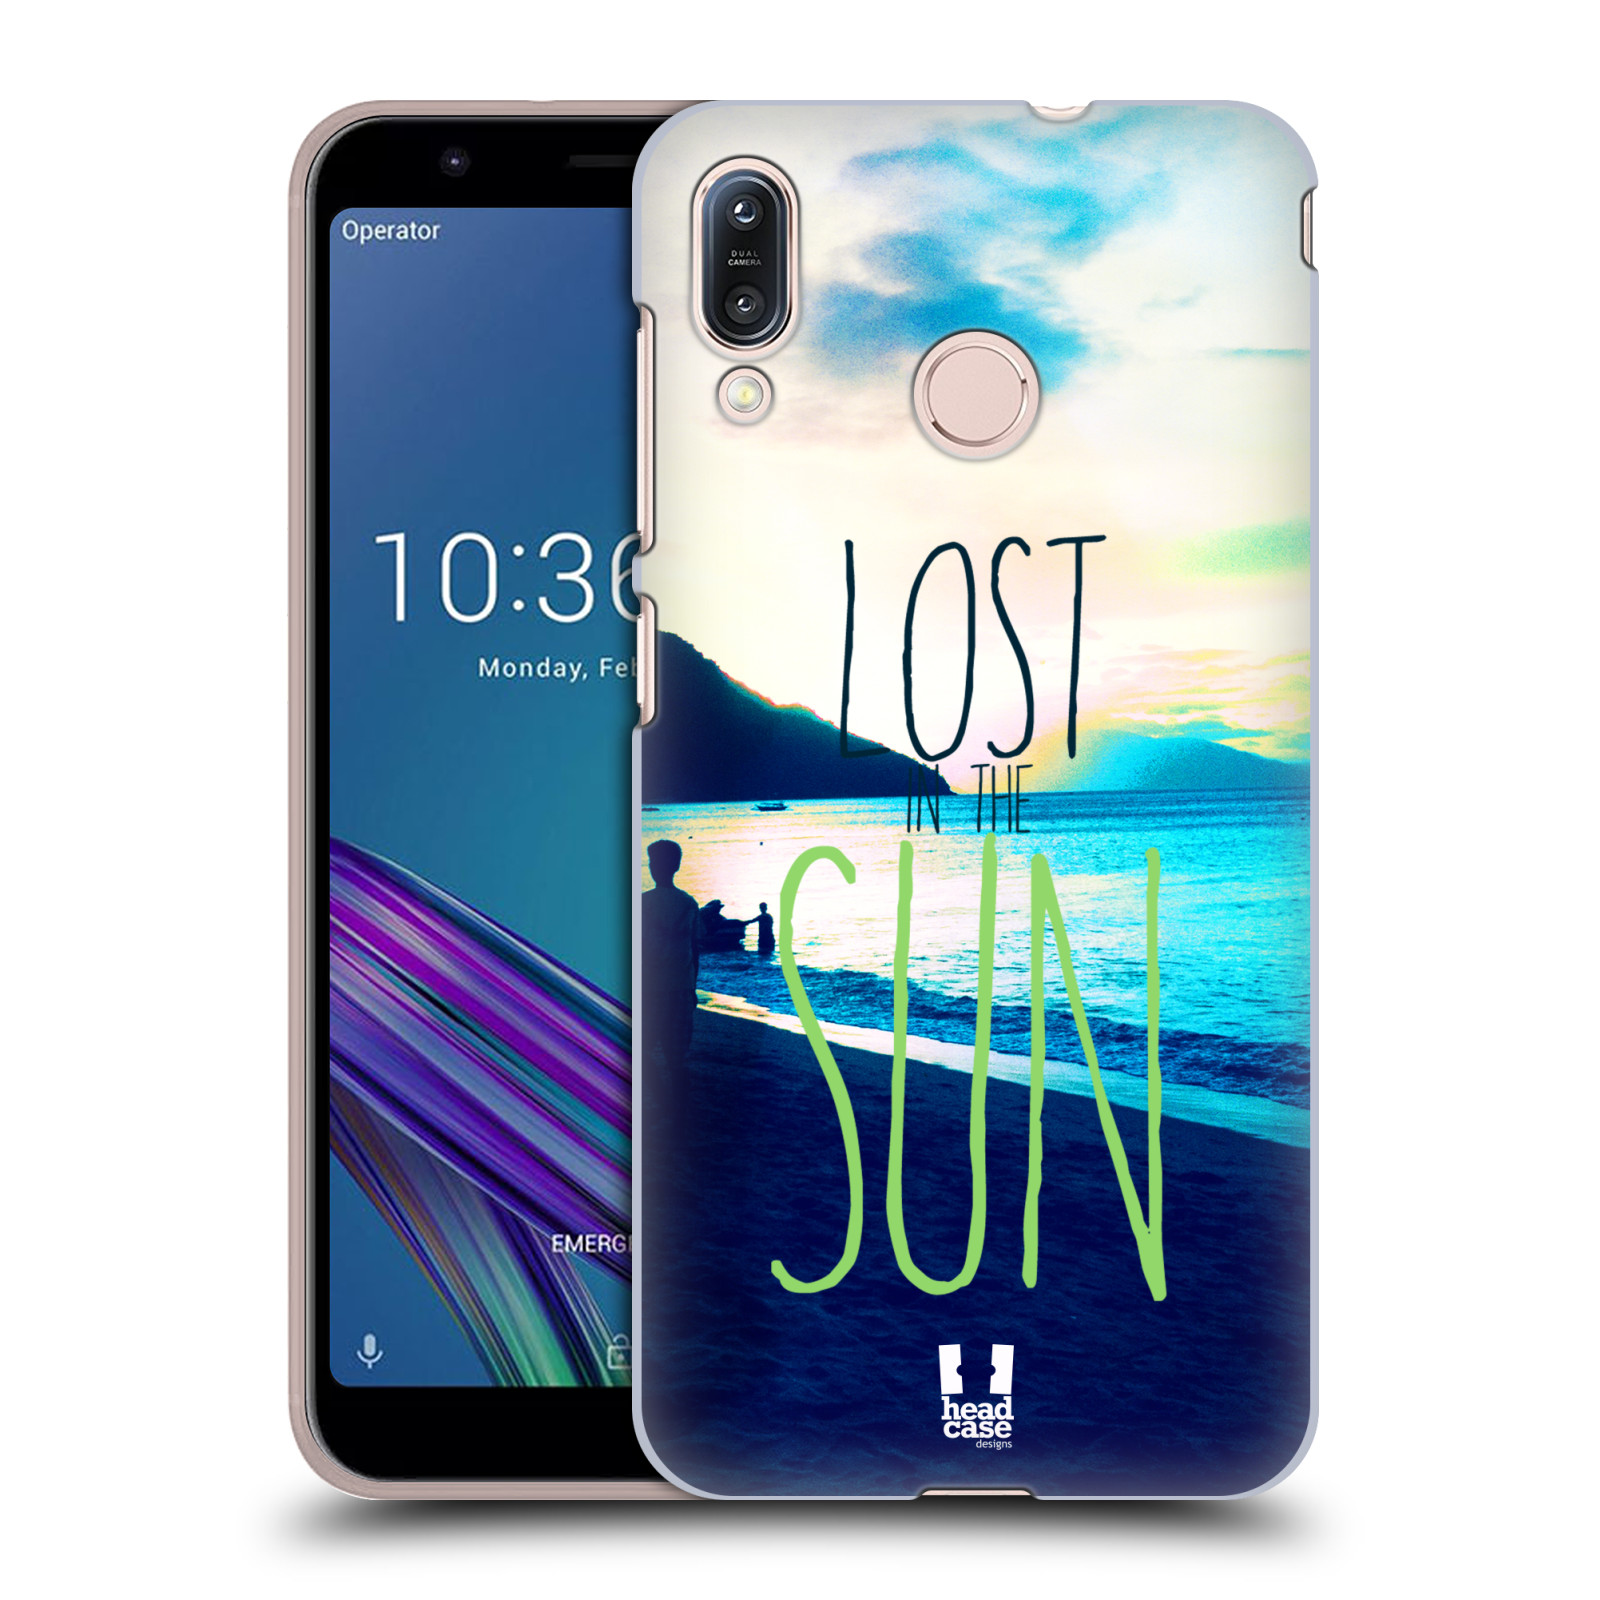 Pouzdro na mobil Asus Zenfone Max M1 (ZB555KL) - HEAD CASE - vzor Pozitivní vlny MODRÁ, moře, slunce a pláž LOST IN THE SUN